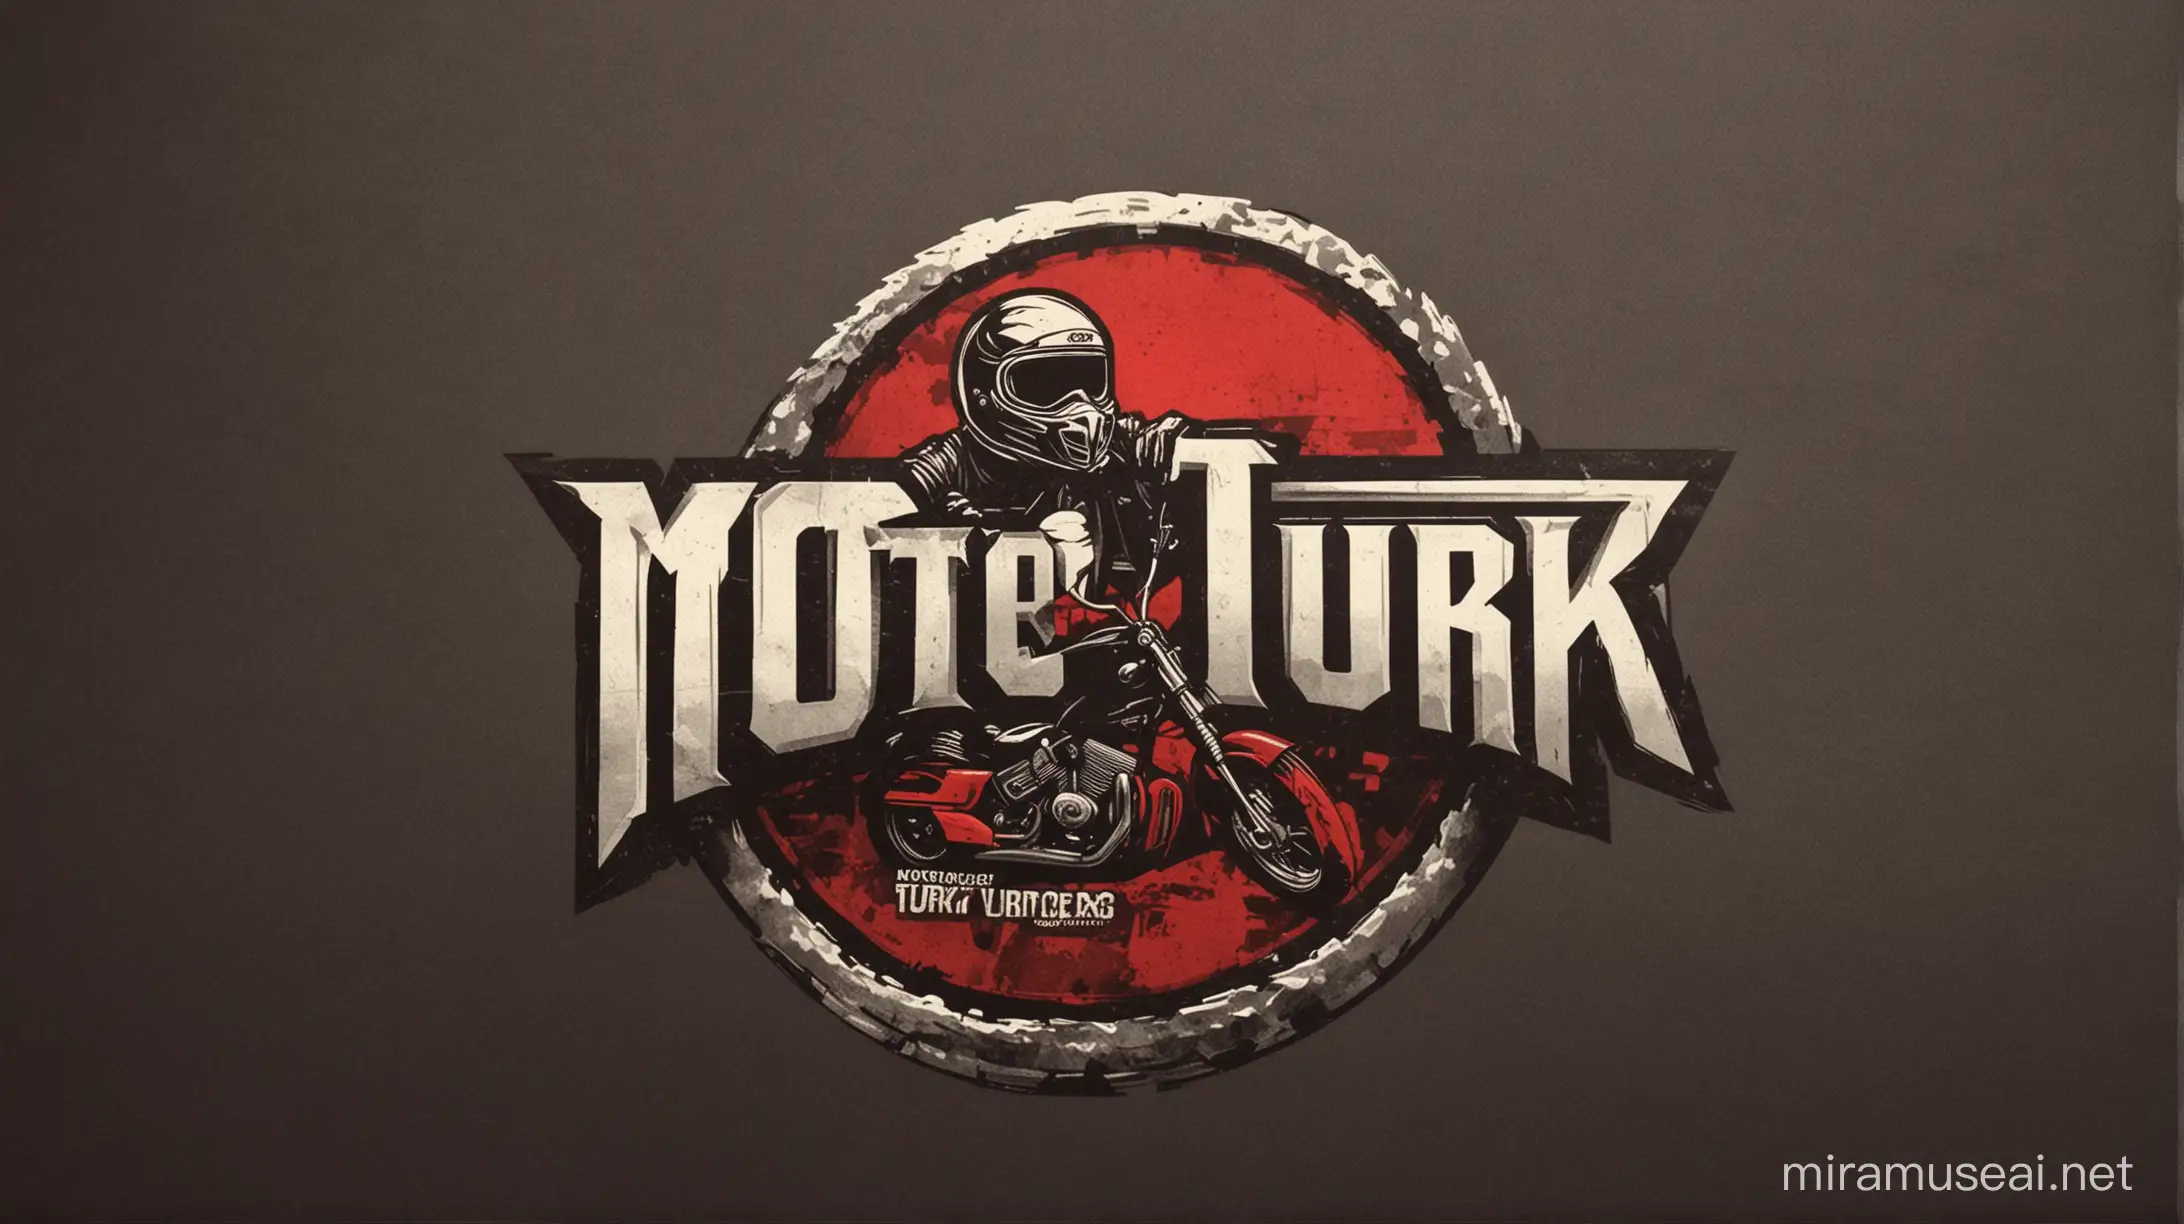 "MOTO TURK" logo that says logo logo logo motorcycle 